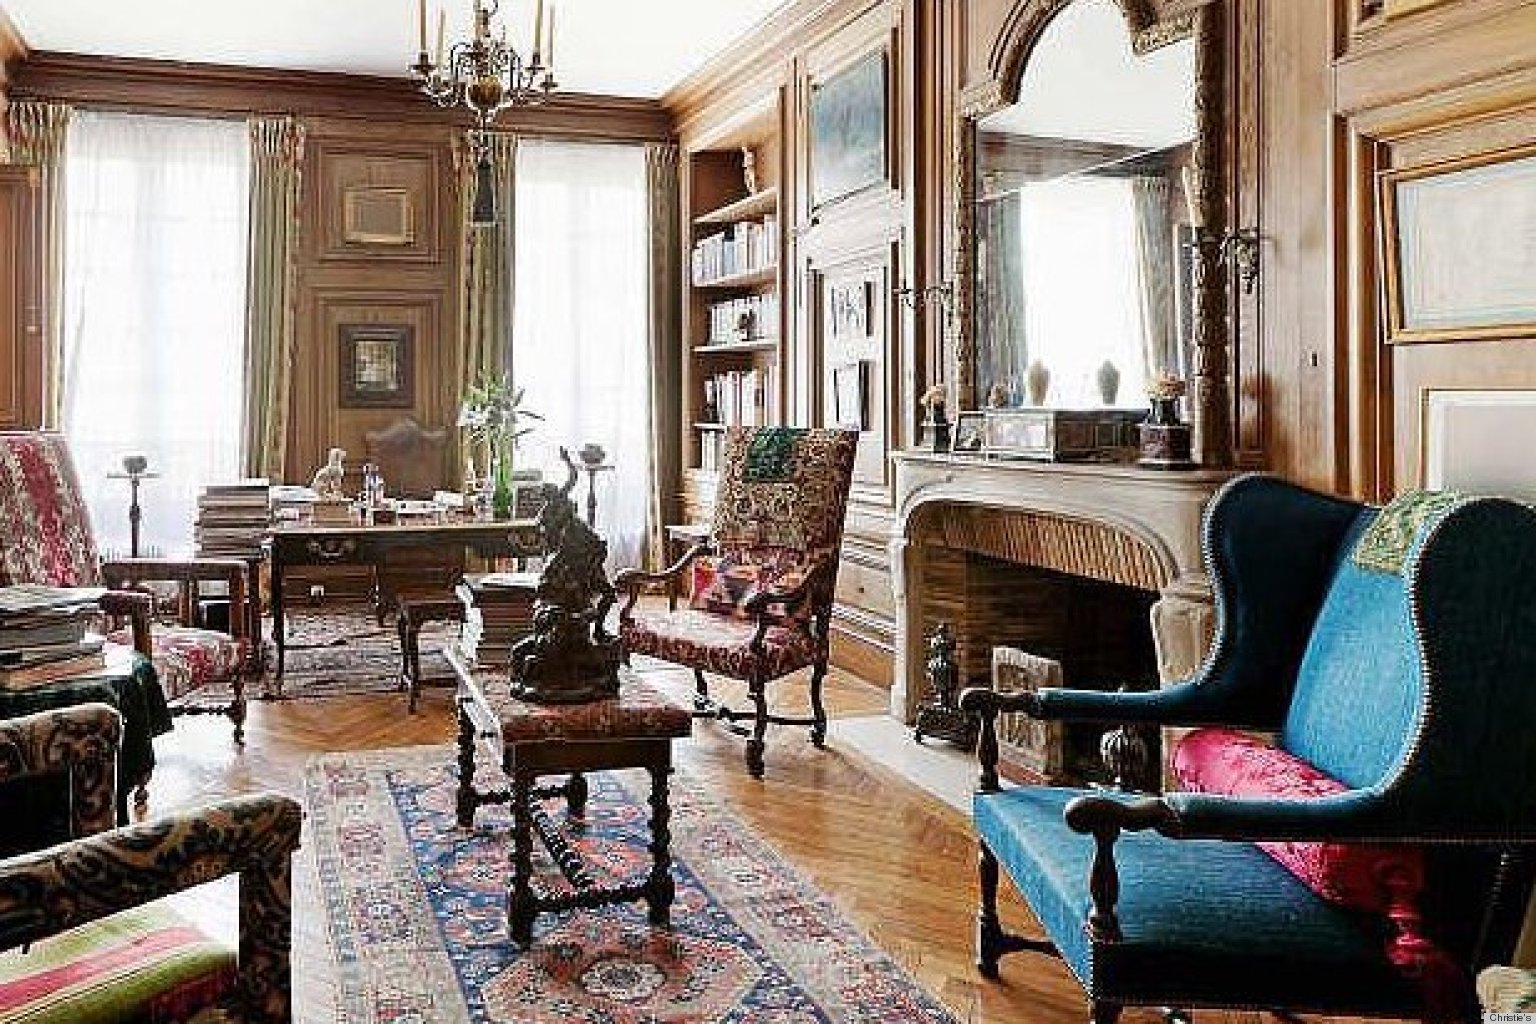 House Tour: Inside A Glamorous Parisian Apartment (PHOTOS) | HuffPost